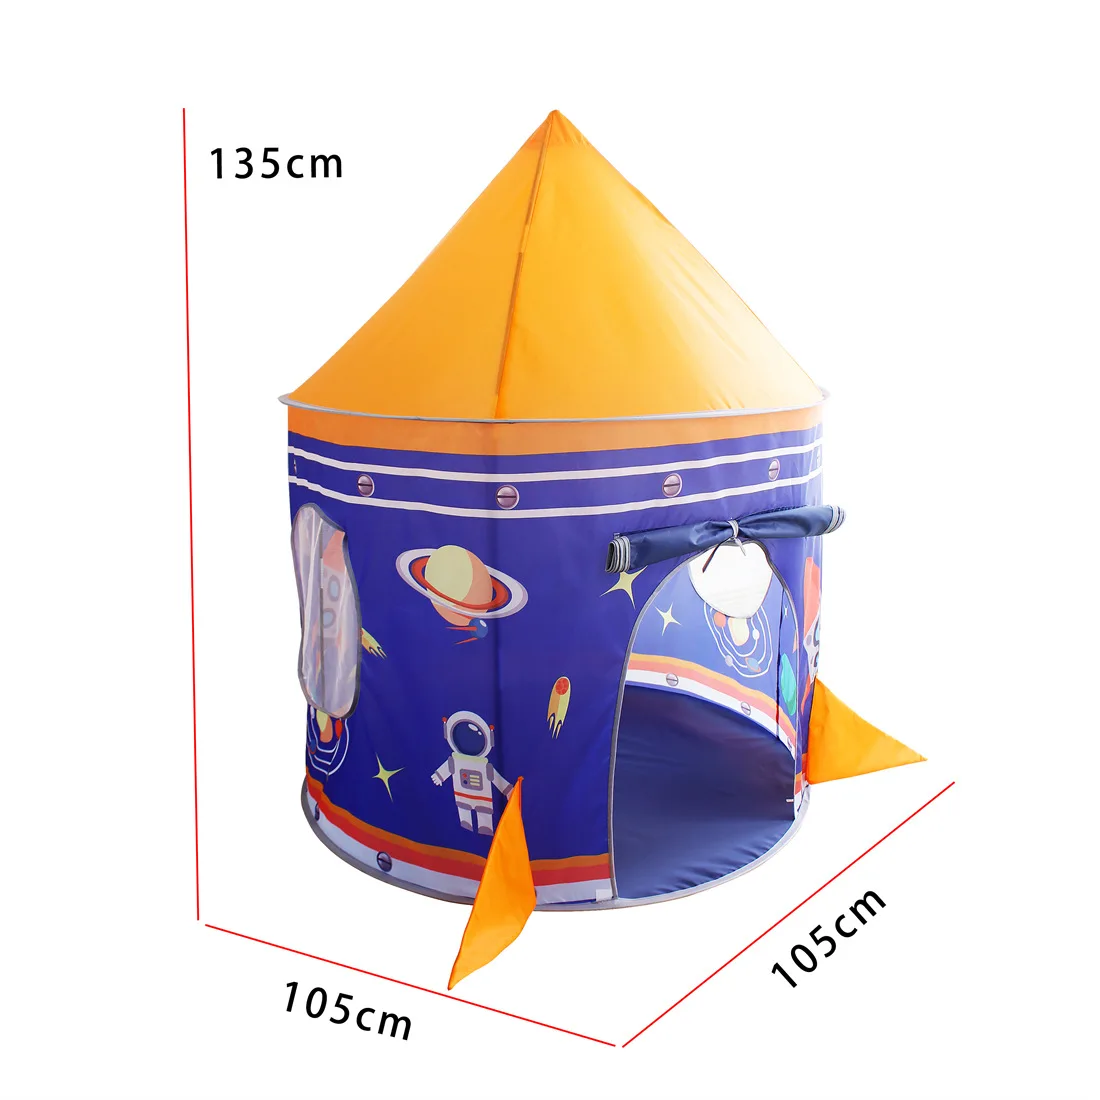 火箭飞船星空宇宙蒙古包太空游戏屋玩具城堡星际旅行儿童帐篷 Buy 儿童套装野营帐篷玩具 异国情调的帐篷 儿童玩具帐篷product On Alibaba Com